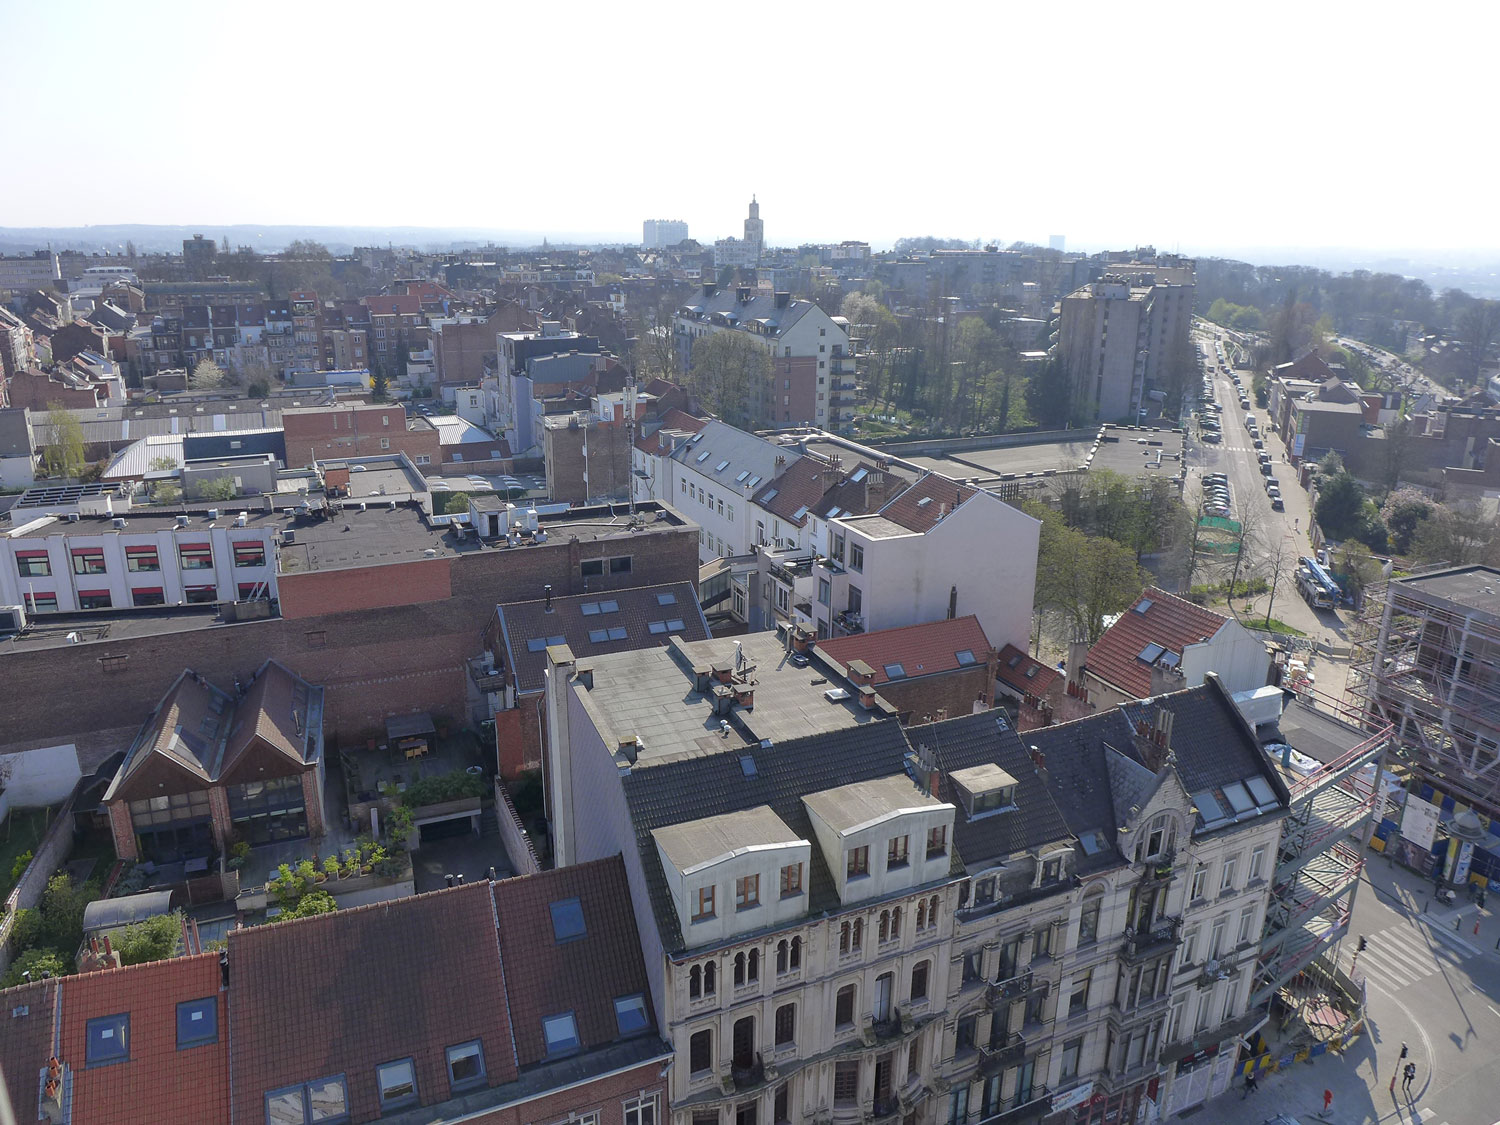 À Bruxelles, notre envoyé spécial est logé dans un appartement avec un magnifique panorama. En se tournant vers le sud, on observe le clocher l’Altitude 100, le point le plus élevé de la ville.